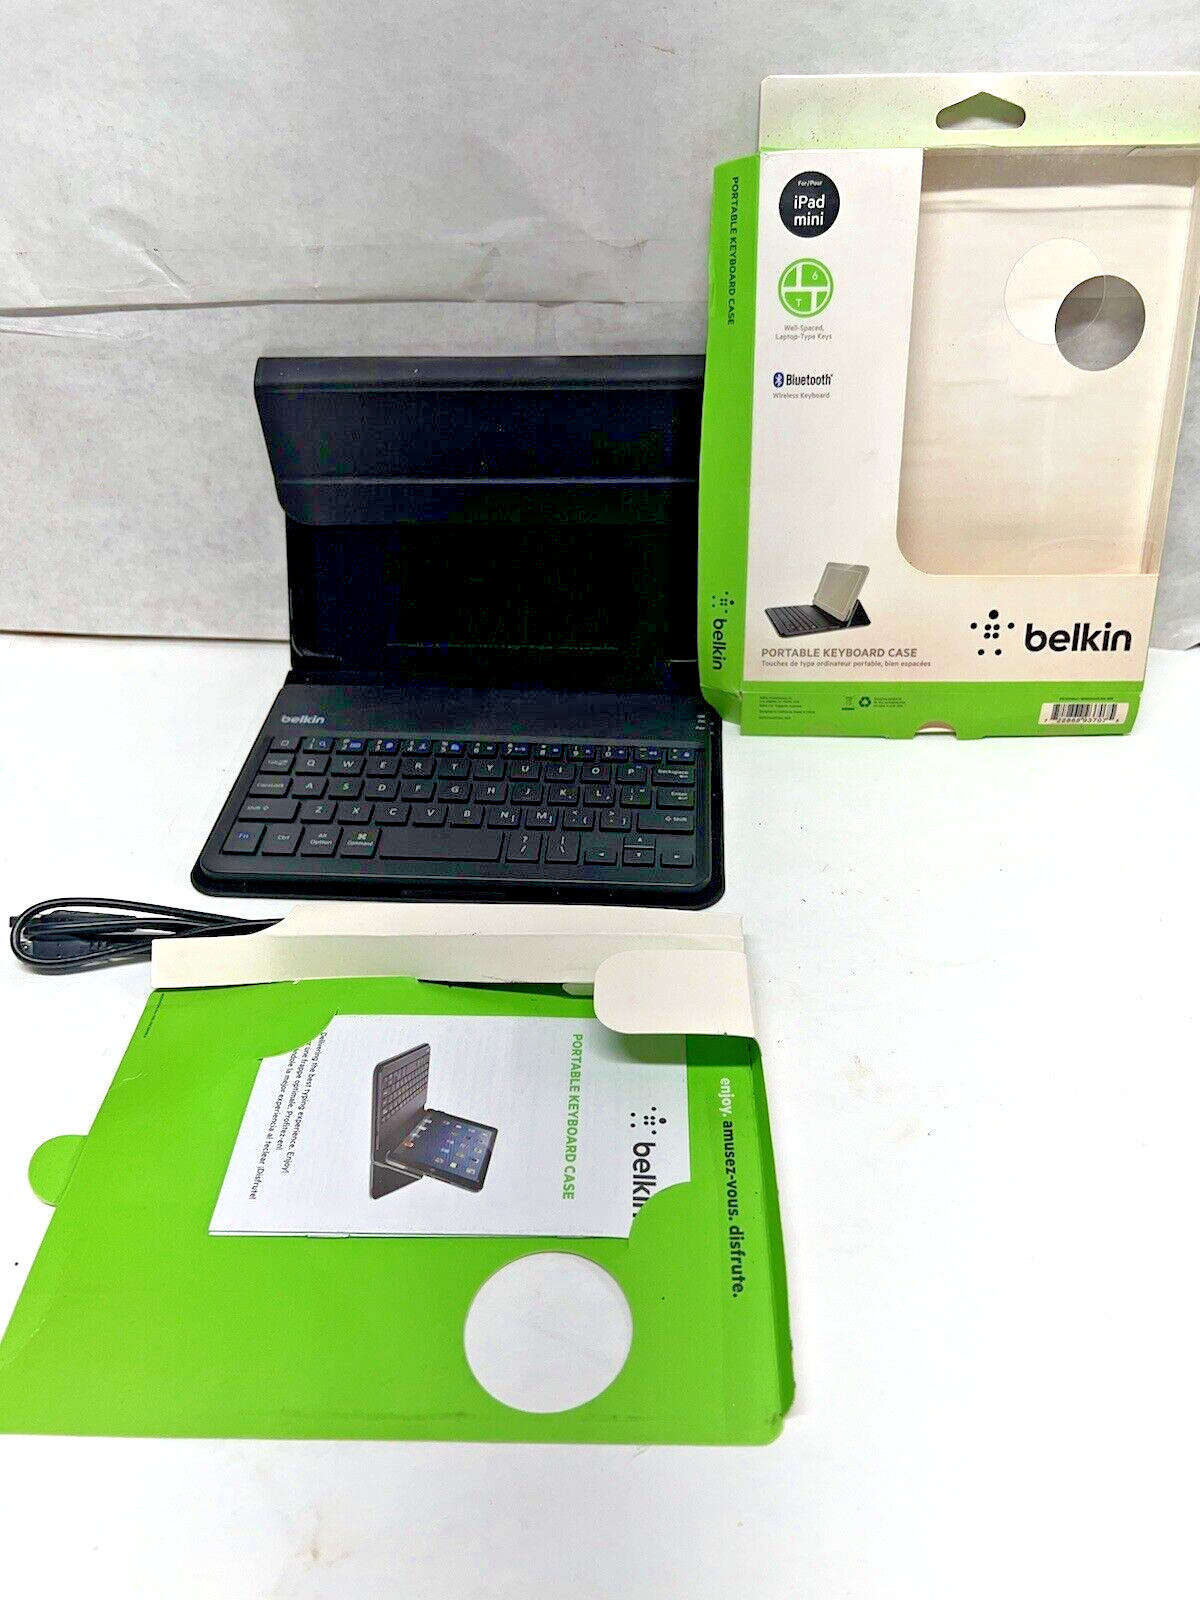 Belkin Portable Bluetooth Keyboard & Case for IPad Mini - BLACK F5L145